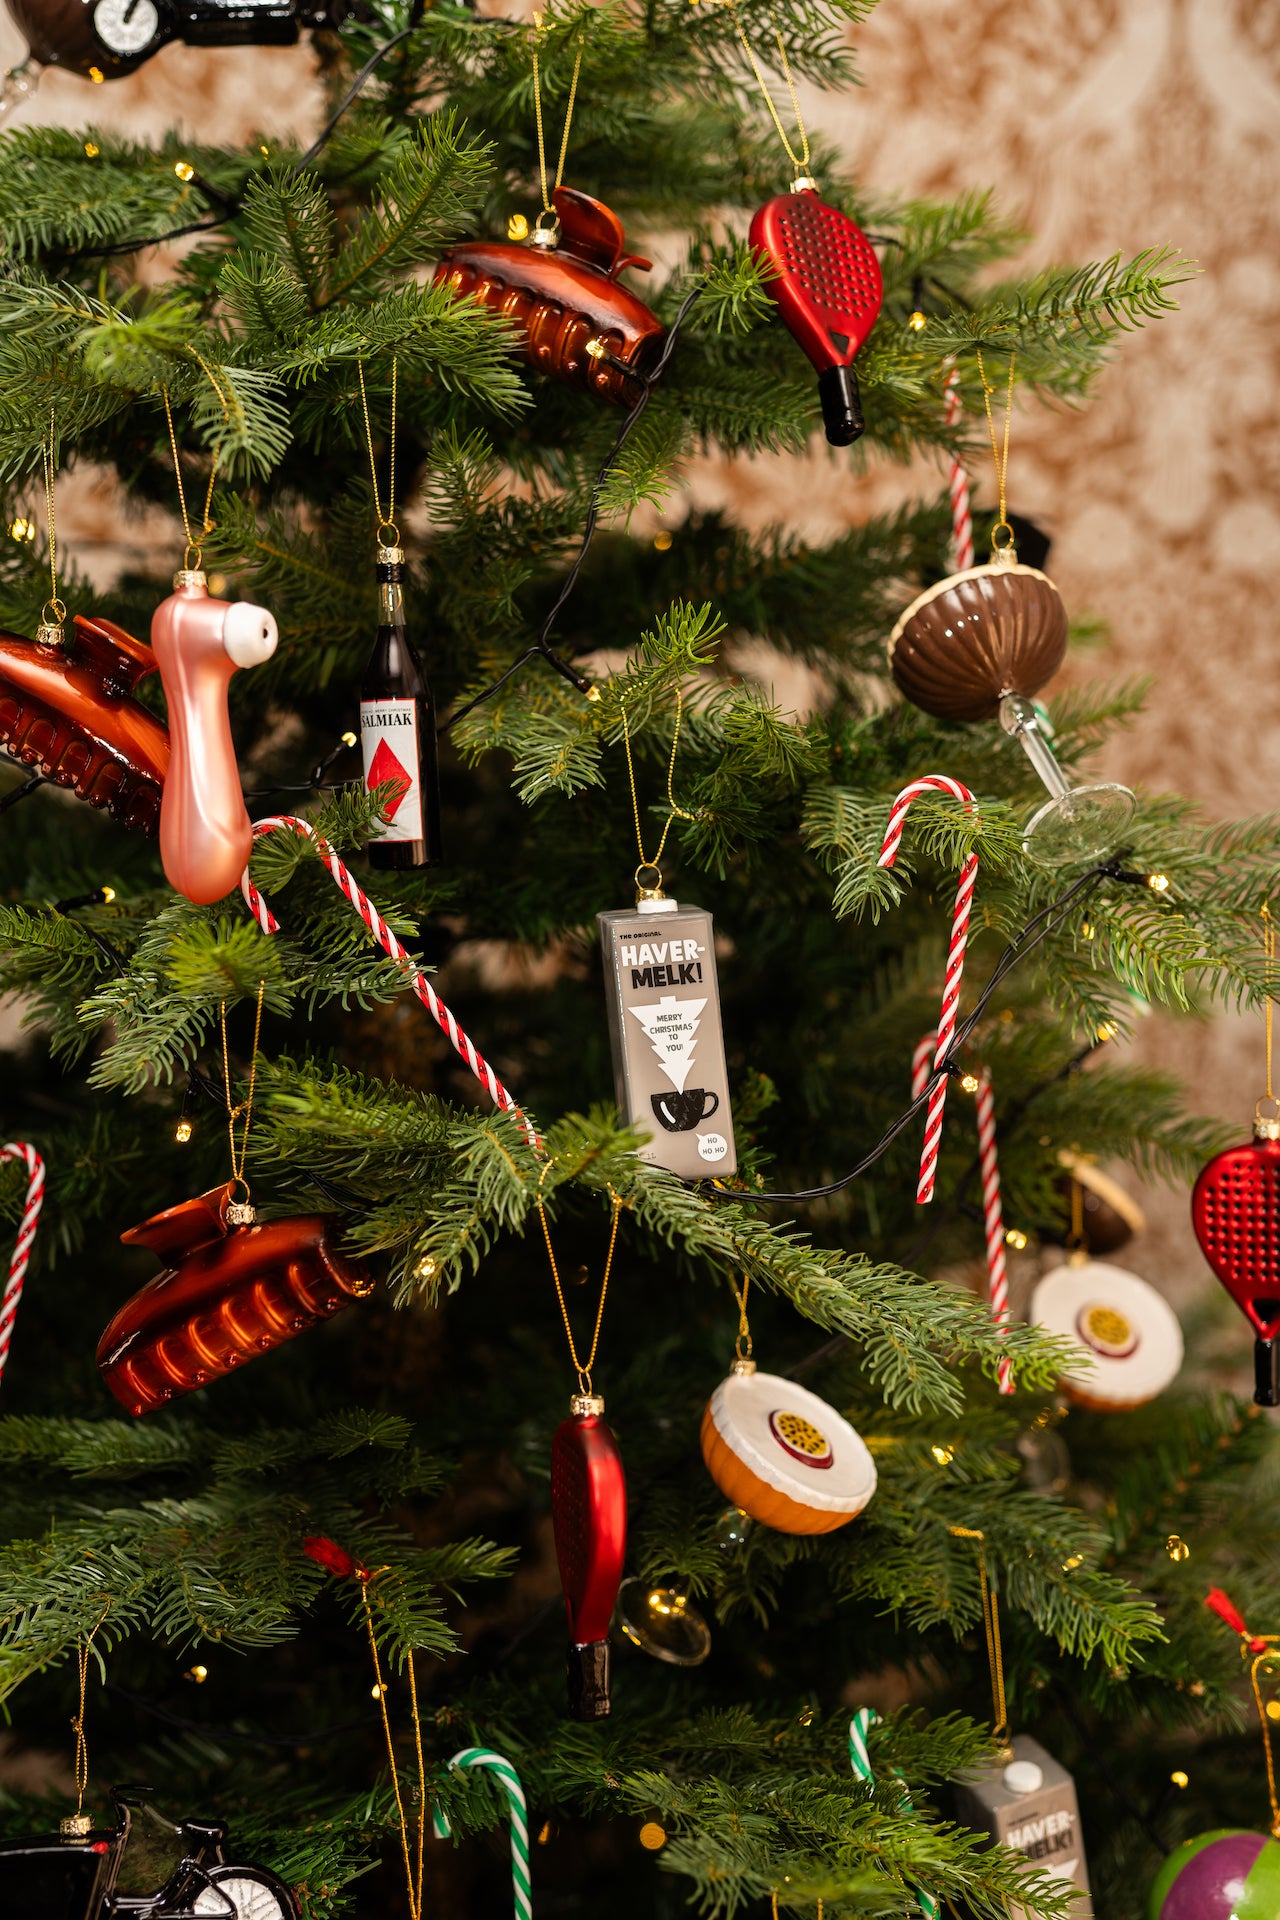 Ons Havermelk Pak Kerstornament is meer dan alleen een decoratie - het is een grappig eerbetoon aan de trendy yuppenlevensstijl. Geïnspireerd door hun voorliefde voor gezonde en hippe keuzes, is dit ornament zorgvuldig ontworpen met oog voor detail. Het zal zeker een glimlach op ieders gezicht toveren tijdens de feestdagen.